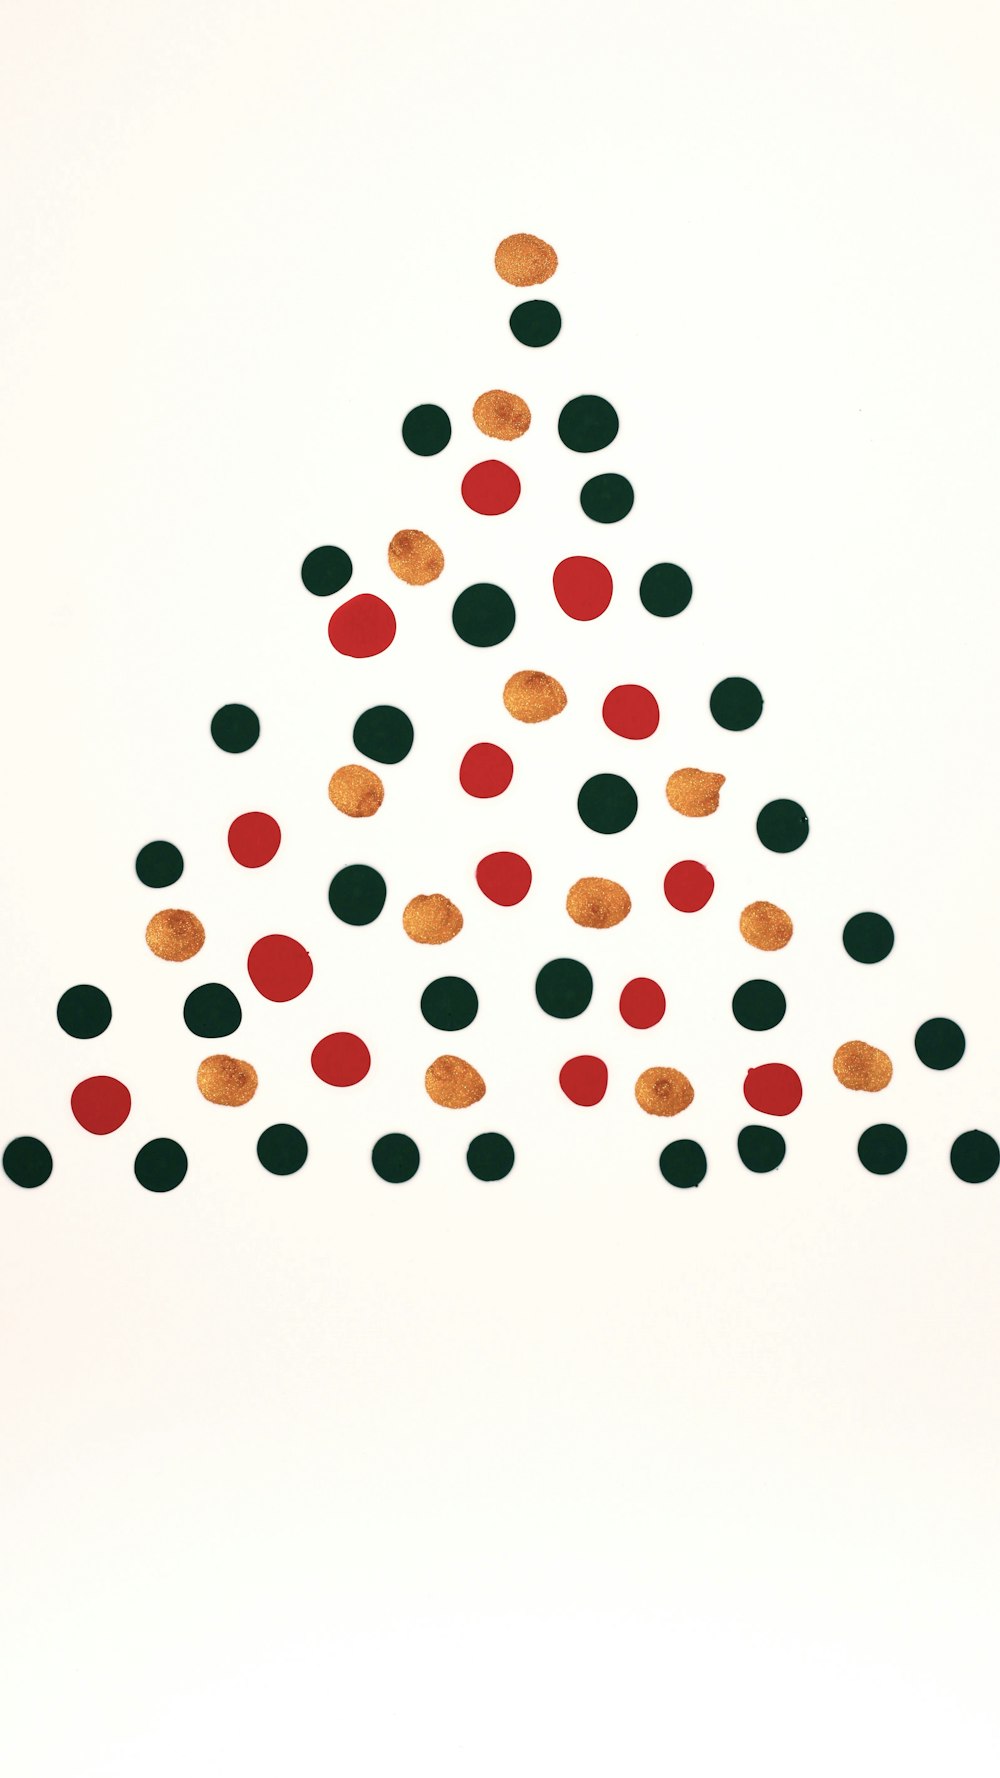 Ein Bild von einem Weihnachtsbaum aus Kreisen